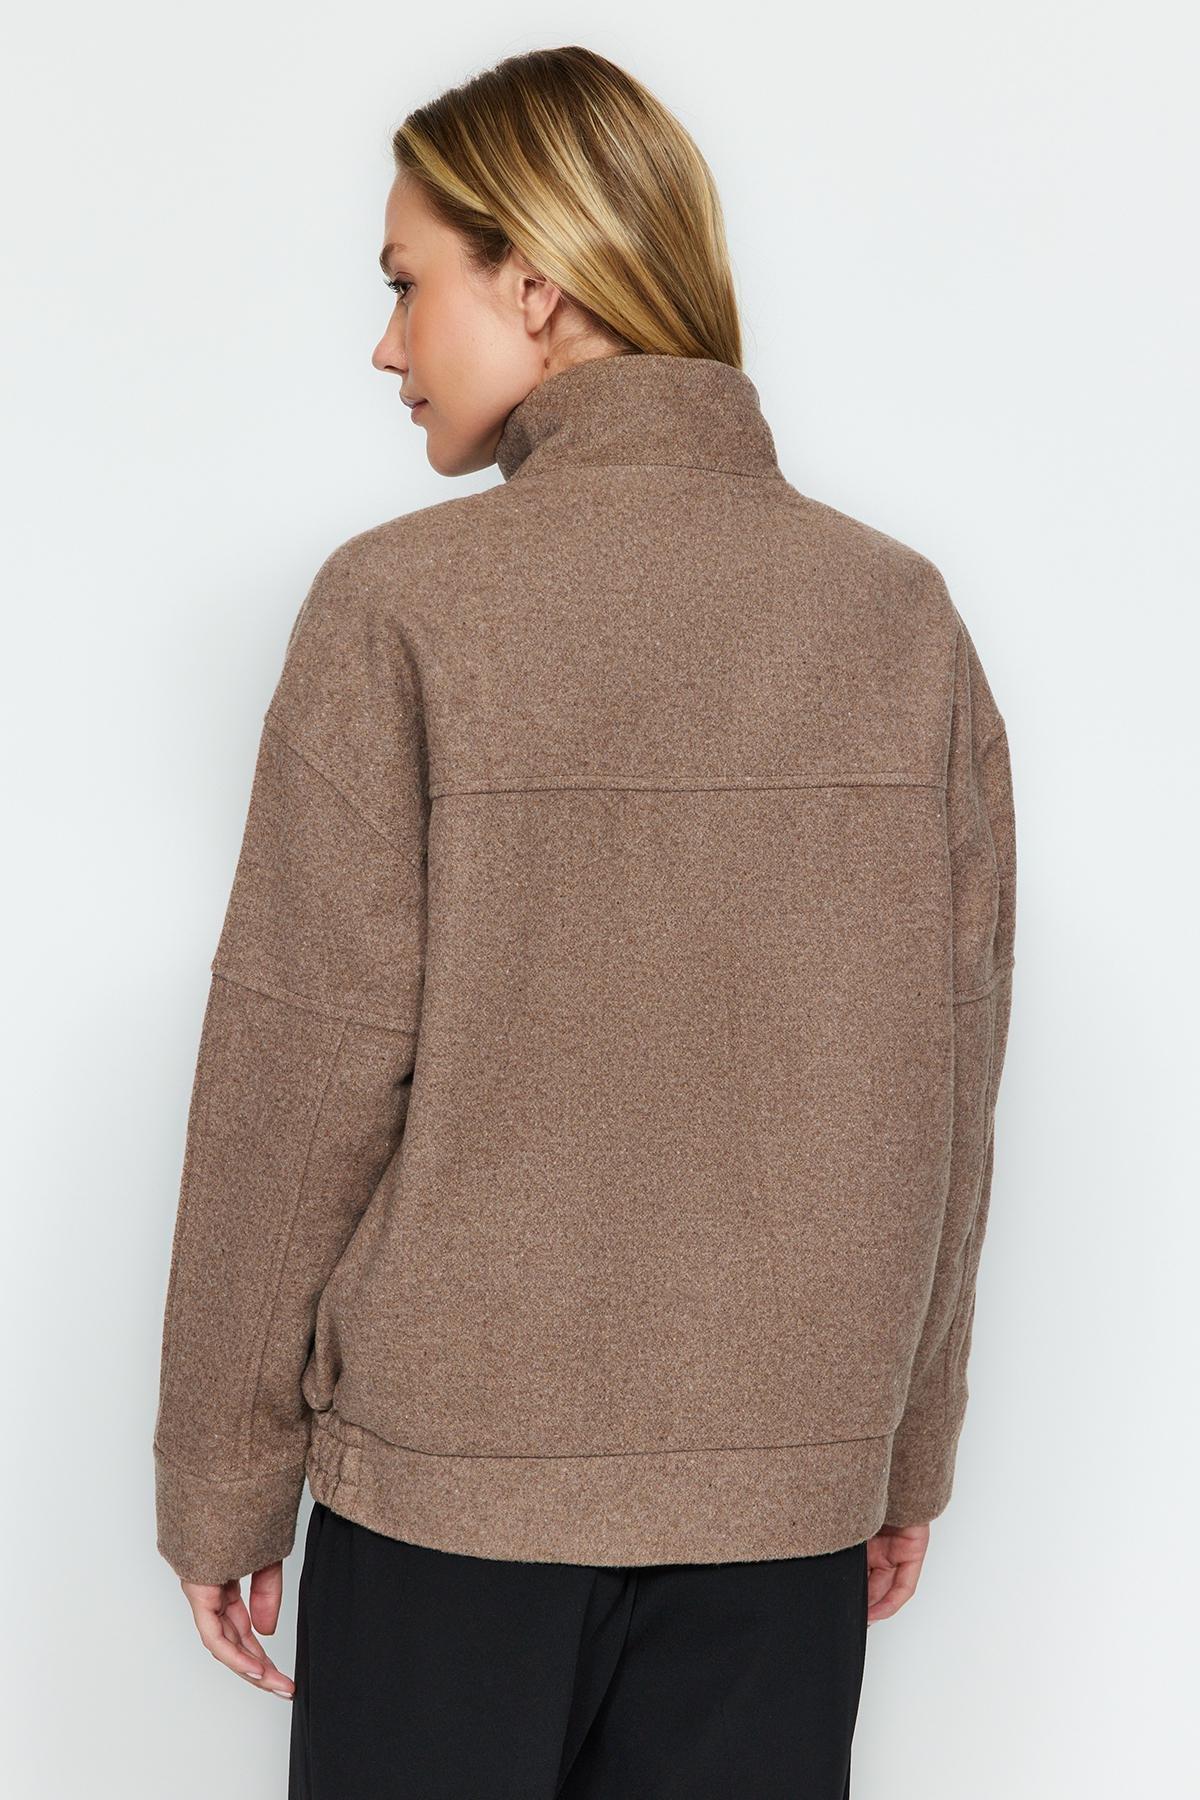 Trendyol - Brown Oversize Jacket Coat